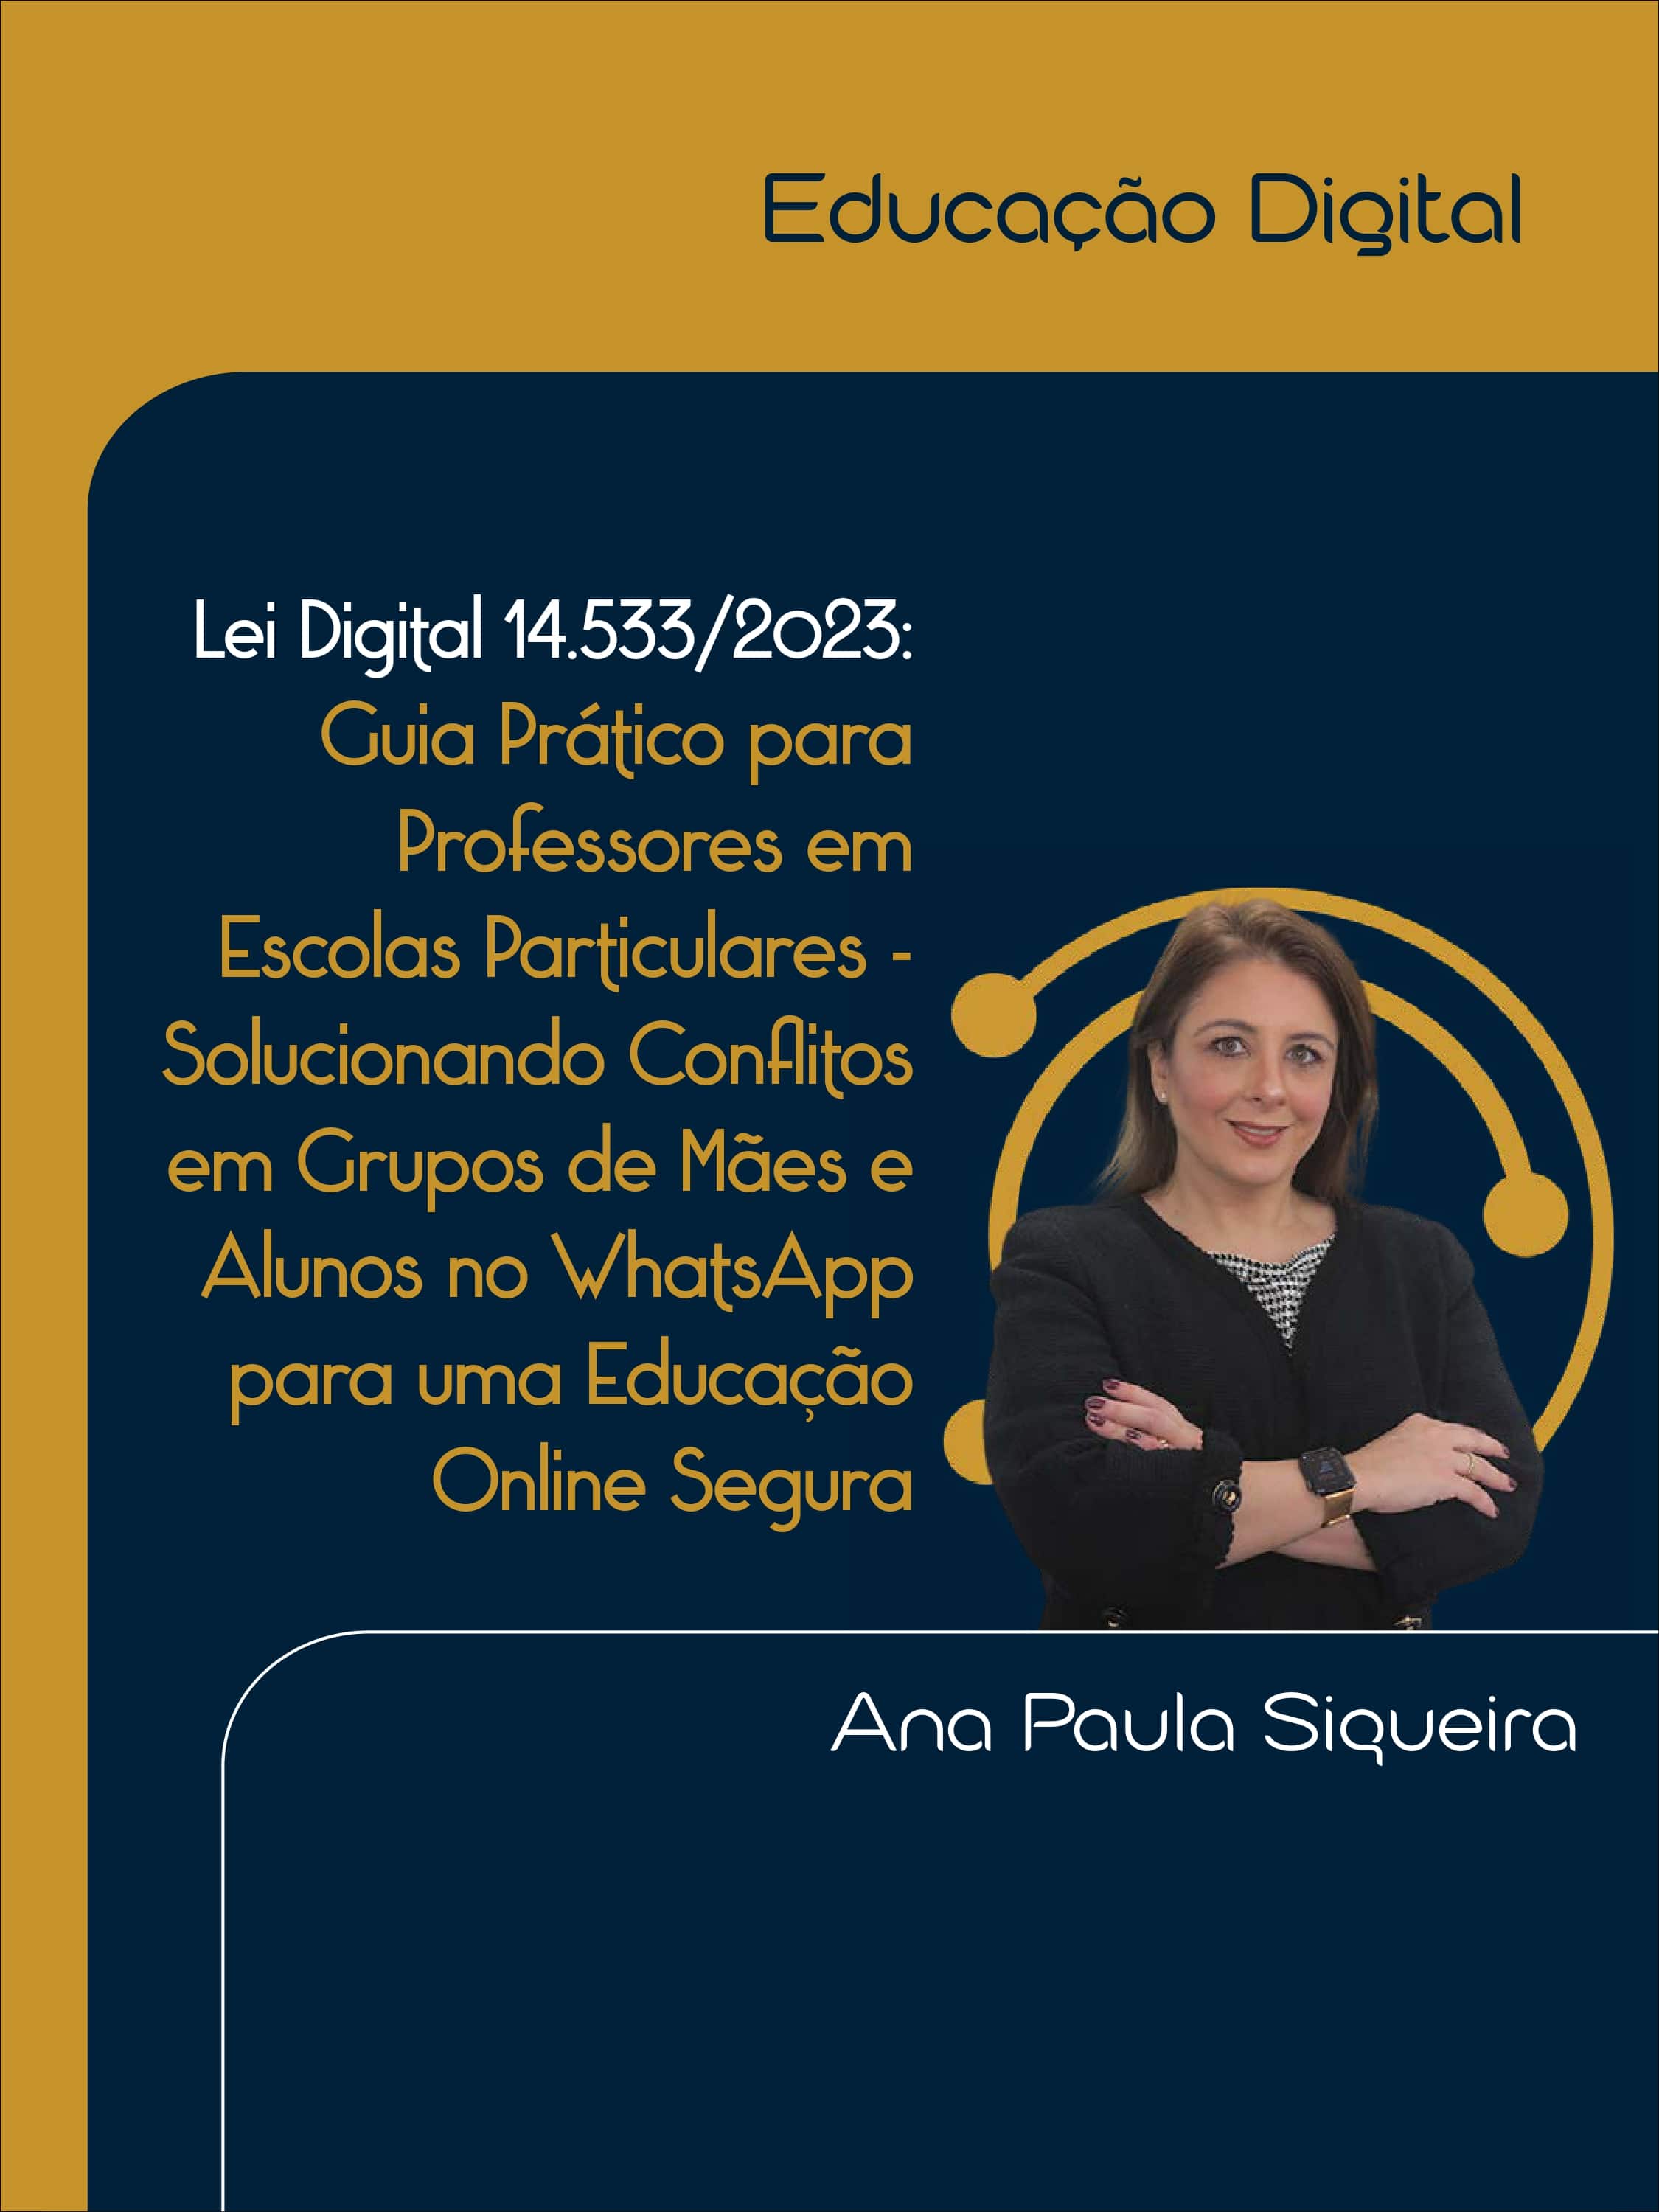 E-book: EDUCAÇÃO DIGITAL (Ana Paula Siqueira)